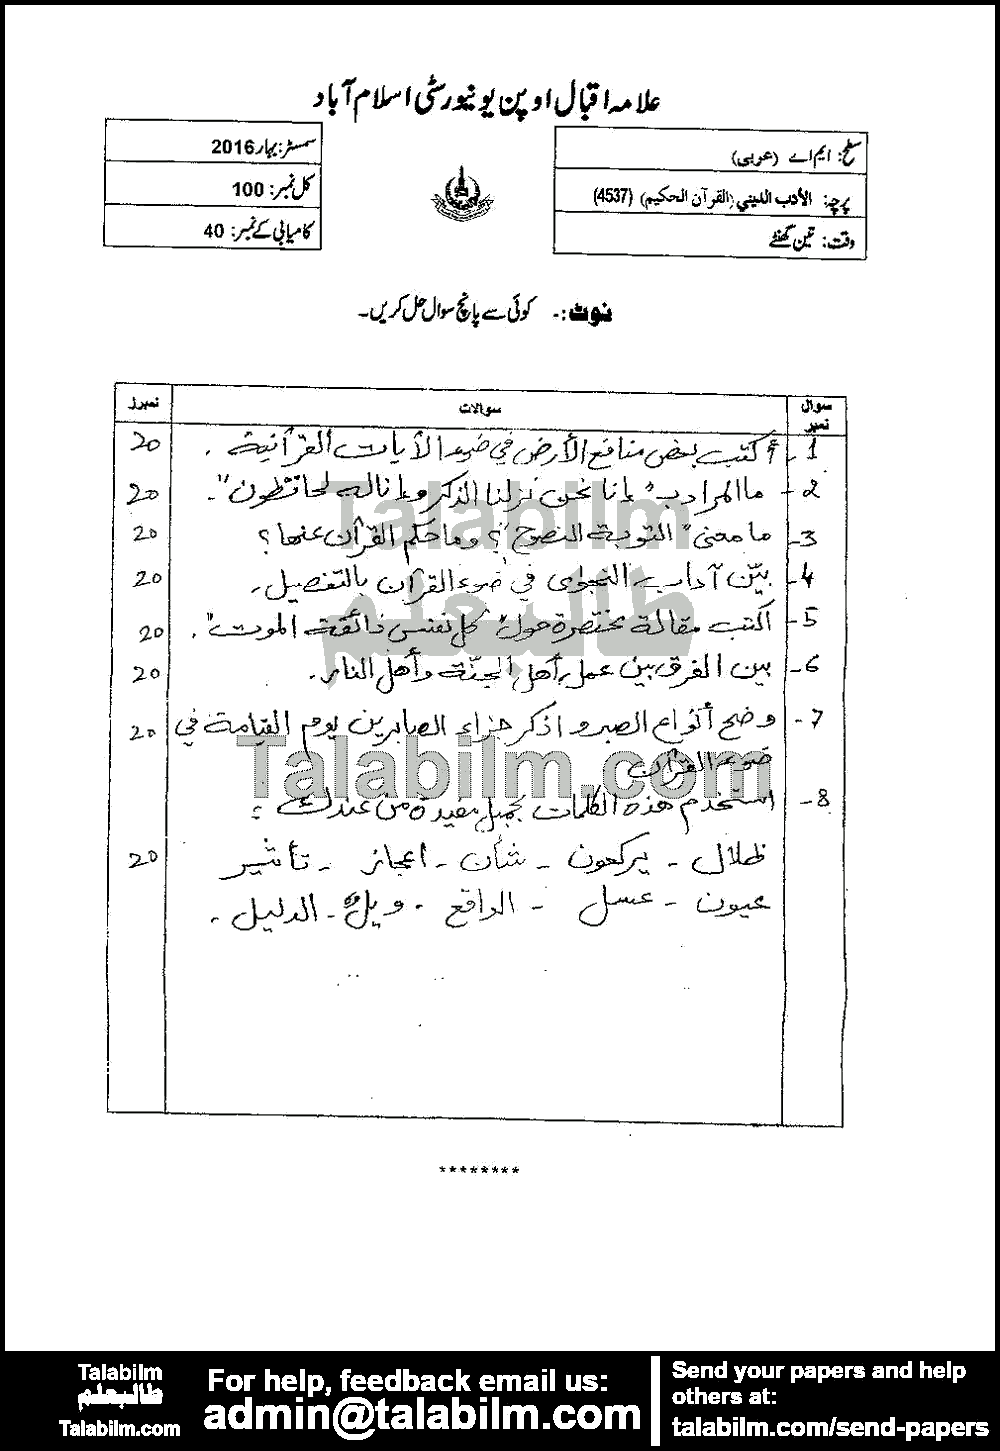 Religious Literature (Quran) 4537 past paper for Spring 2016